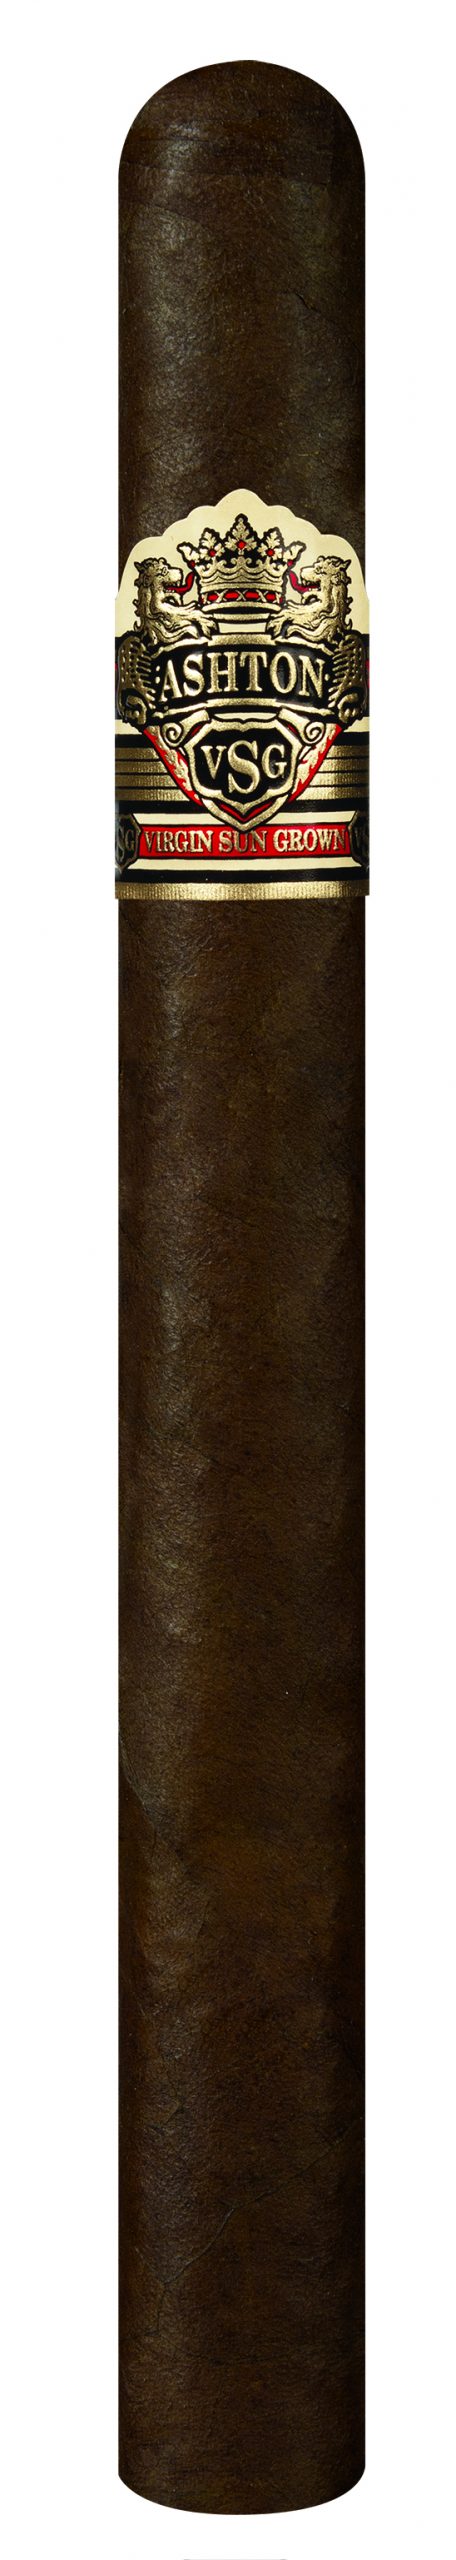 Single Ashton VSG Sorcerer cigar